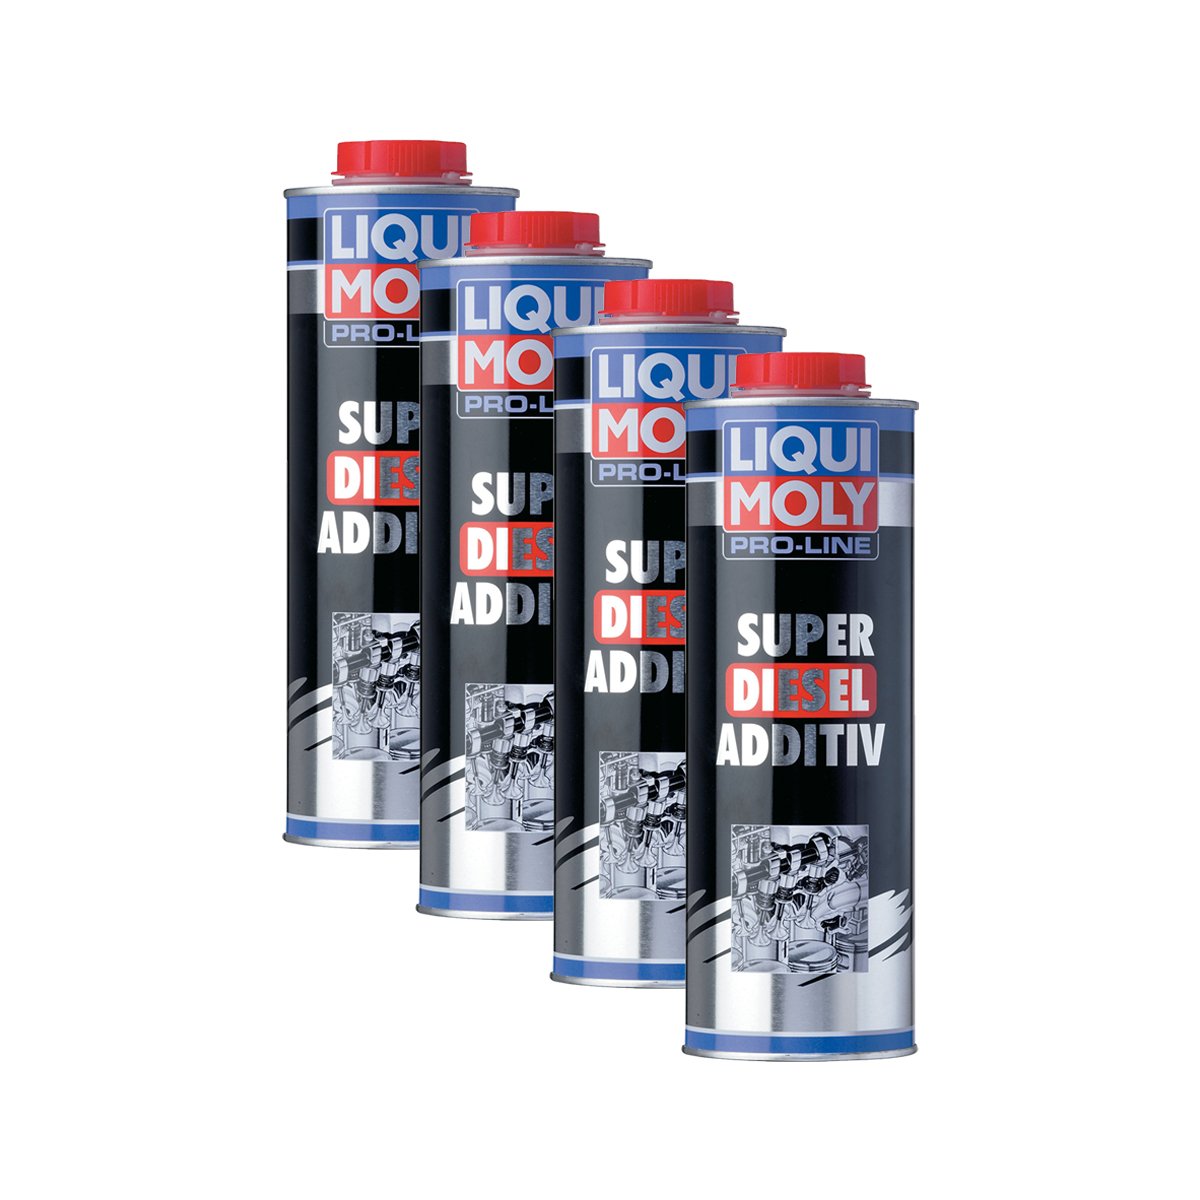 4x LIQUI MOLY 5176 Pro-Line Super Diesel Additiv Kraftstoff Zusatz 1L von LIQUI-MOLY_bundle